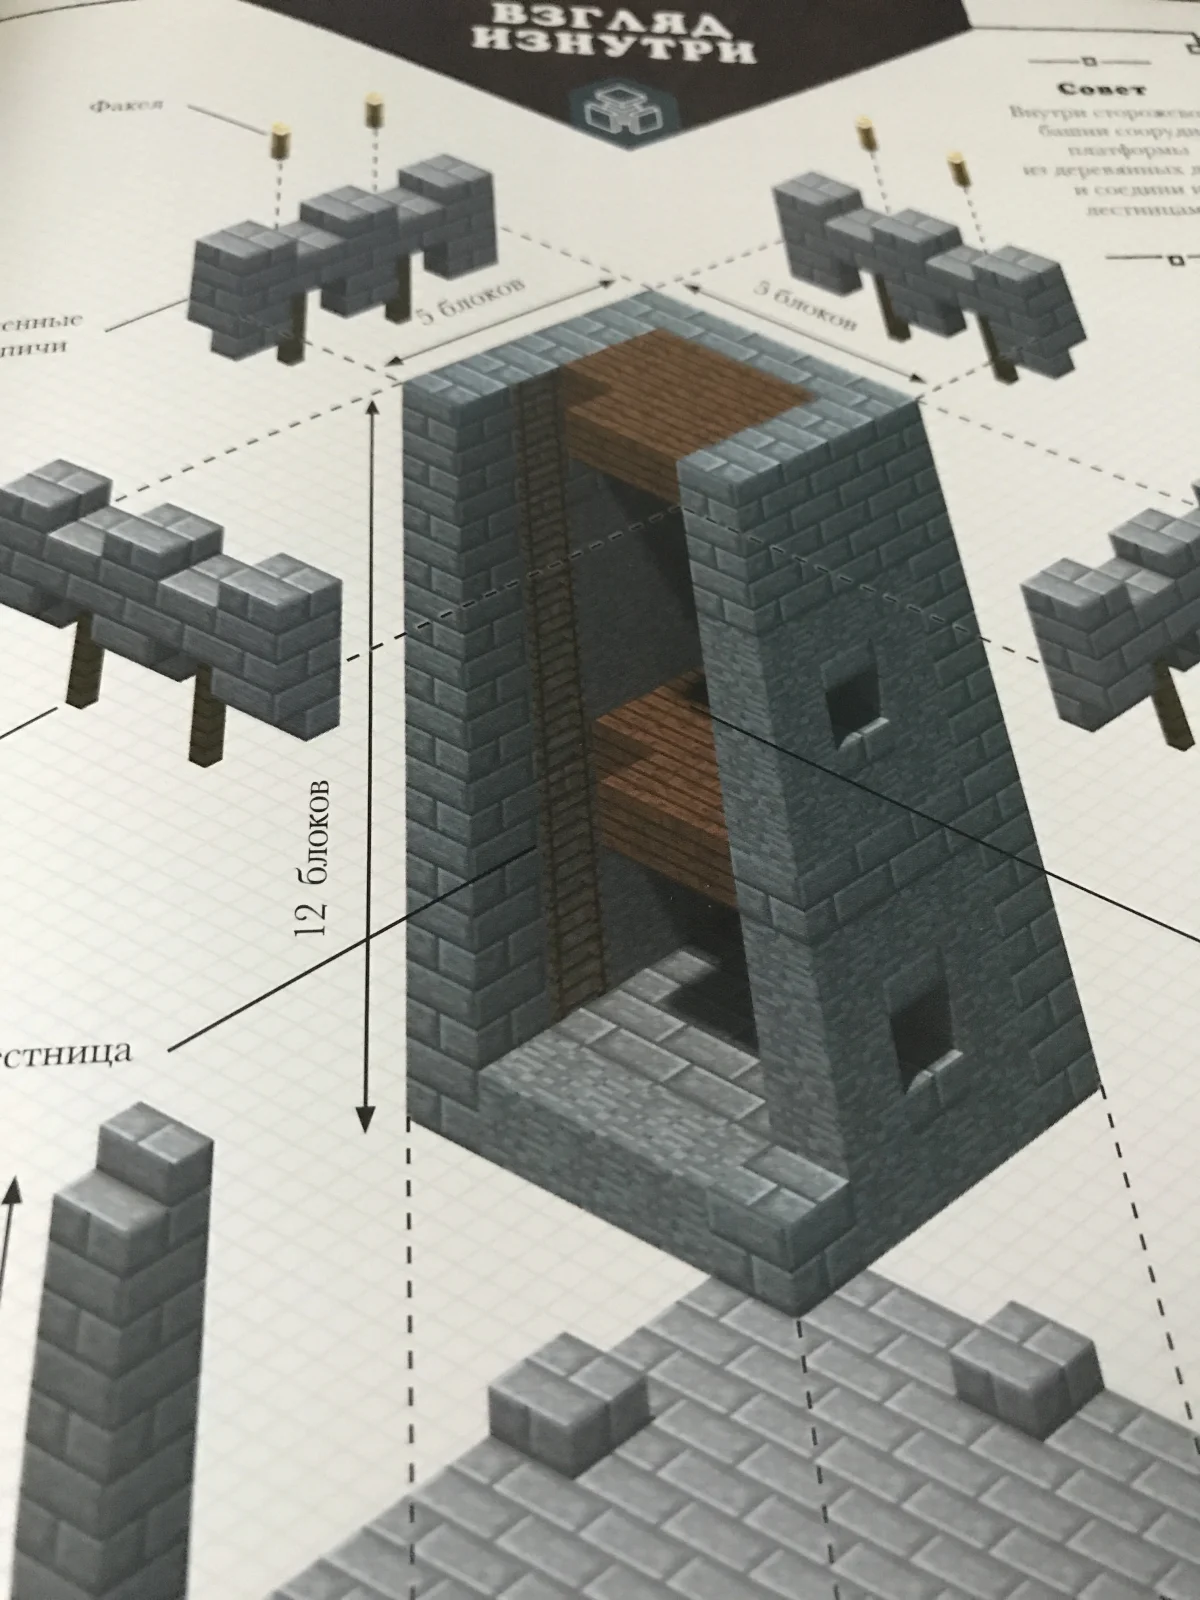 Обзор двух книг по Minecraft — «Minecraft: Только факты» и «Minecraft: Средневековая крепость» - фото 10